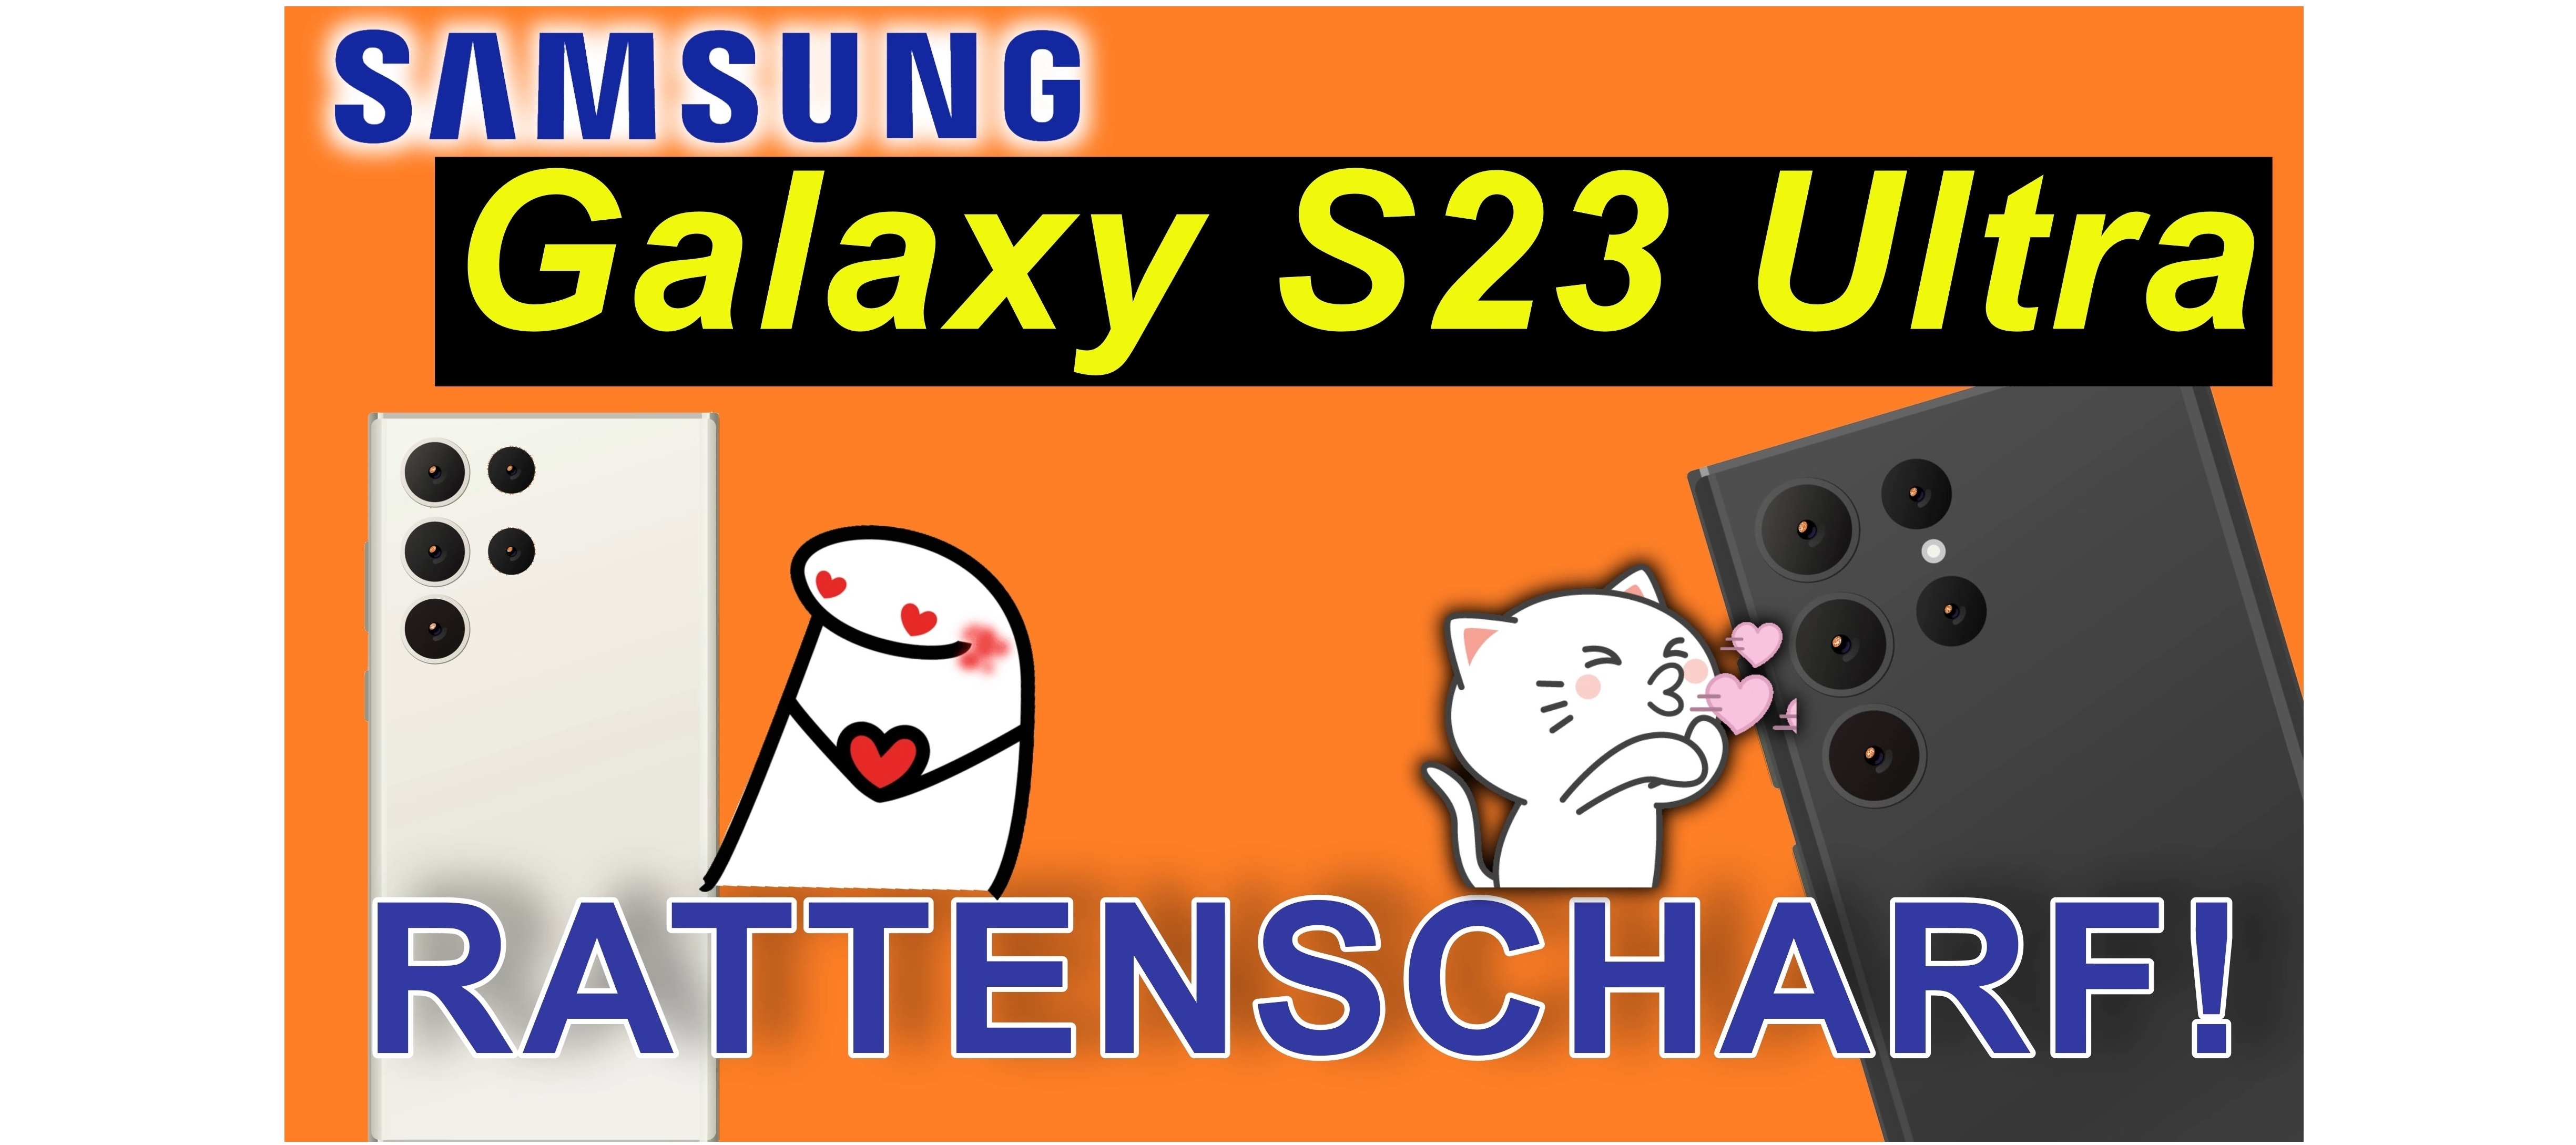 Samsung Galaxy S23 Ultra - rattenscharf, der Wahnsinn!